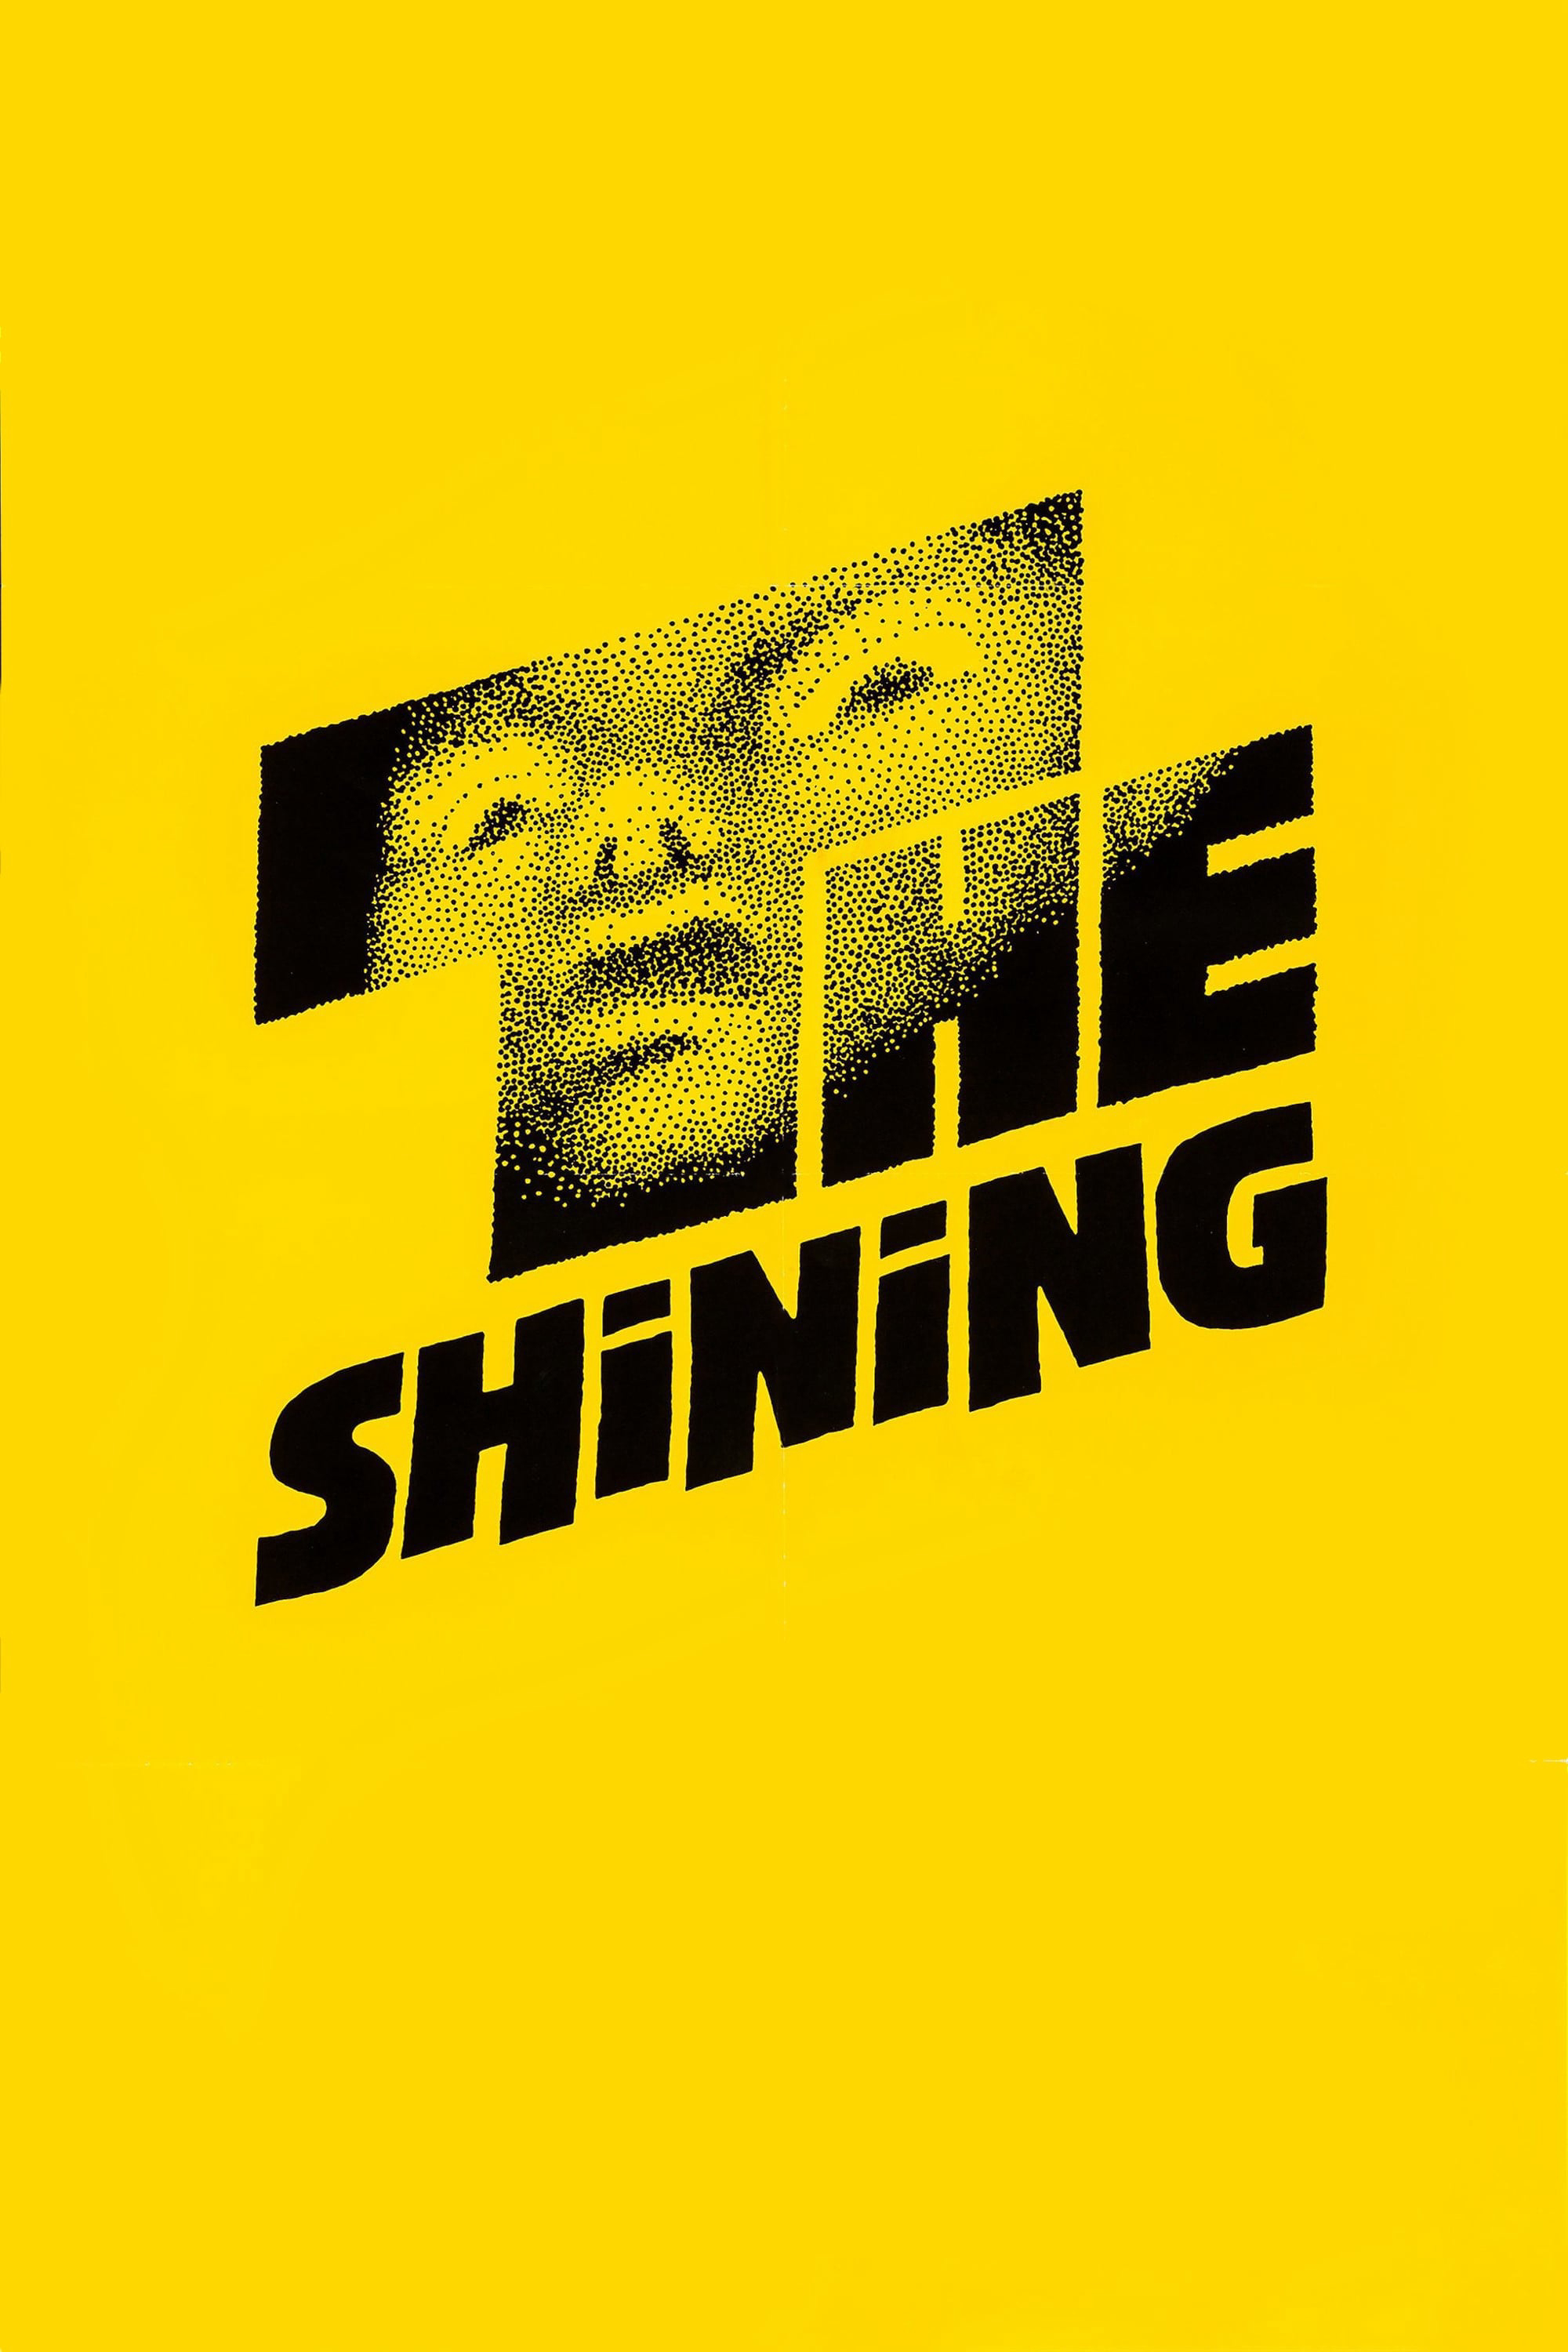 Xem Phim Ngôi Nhà Ma (The Shining)